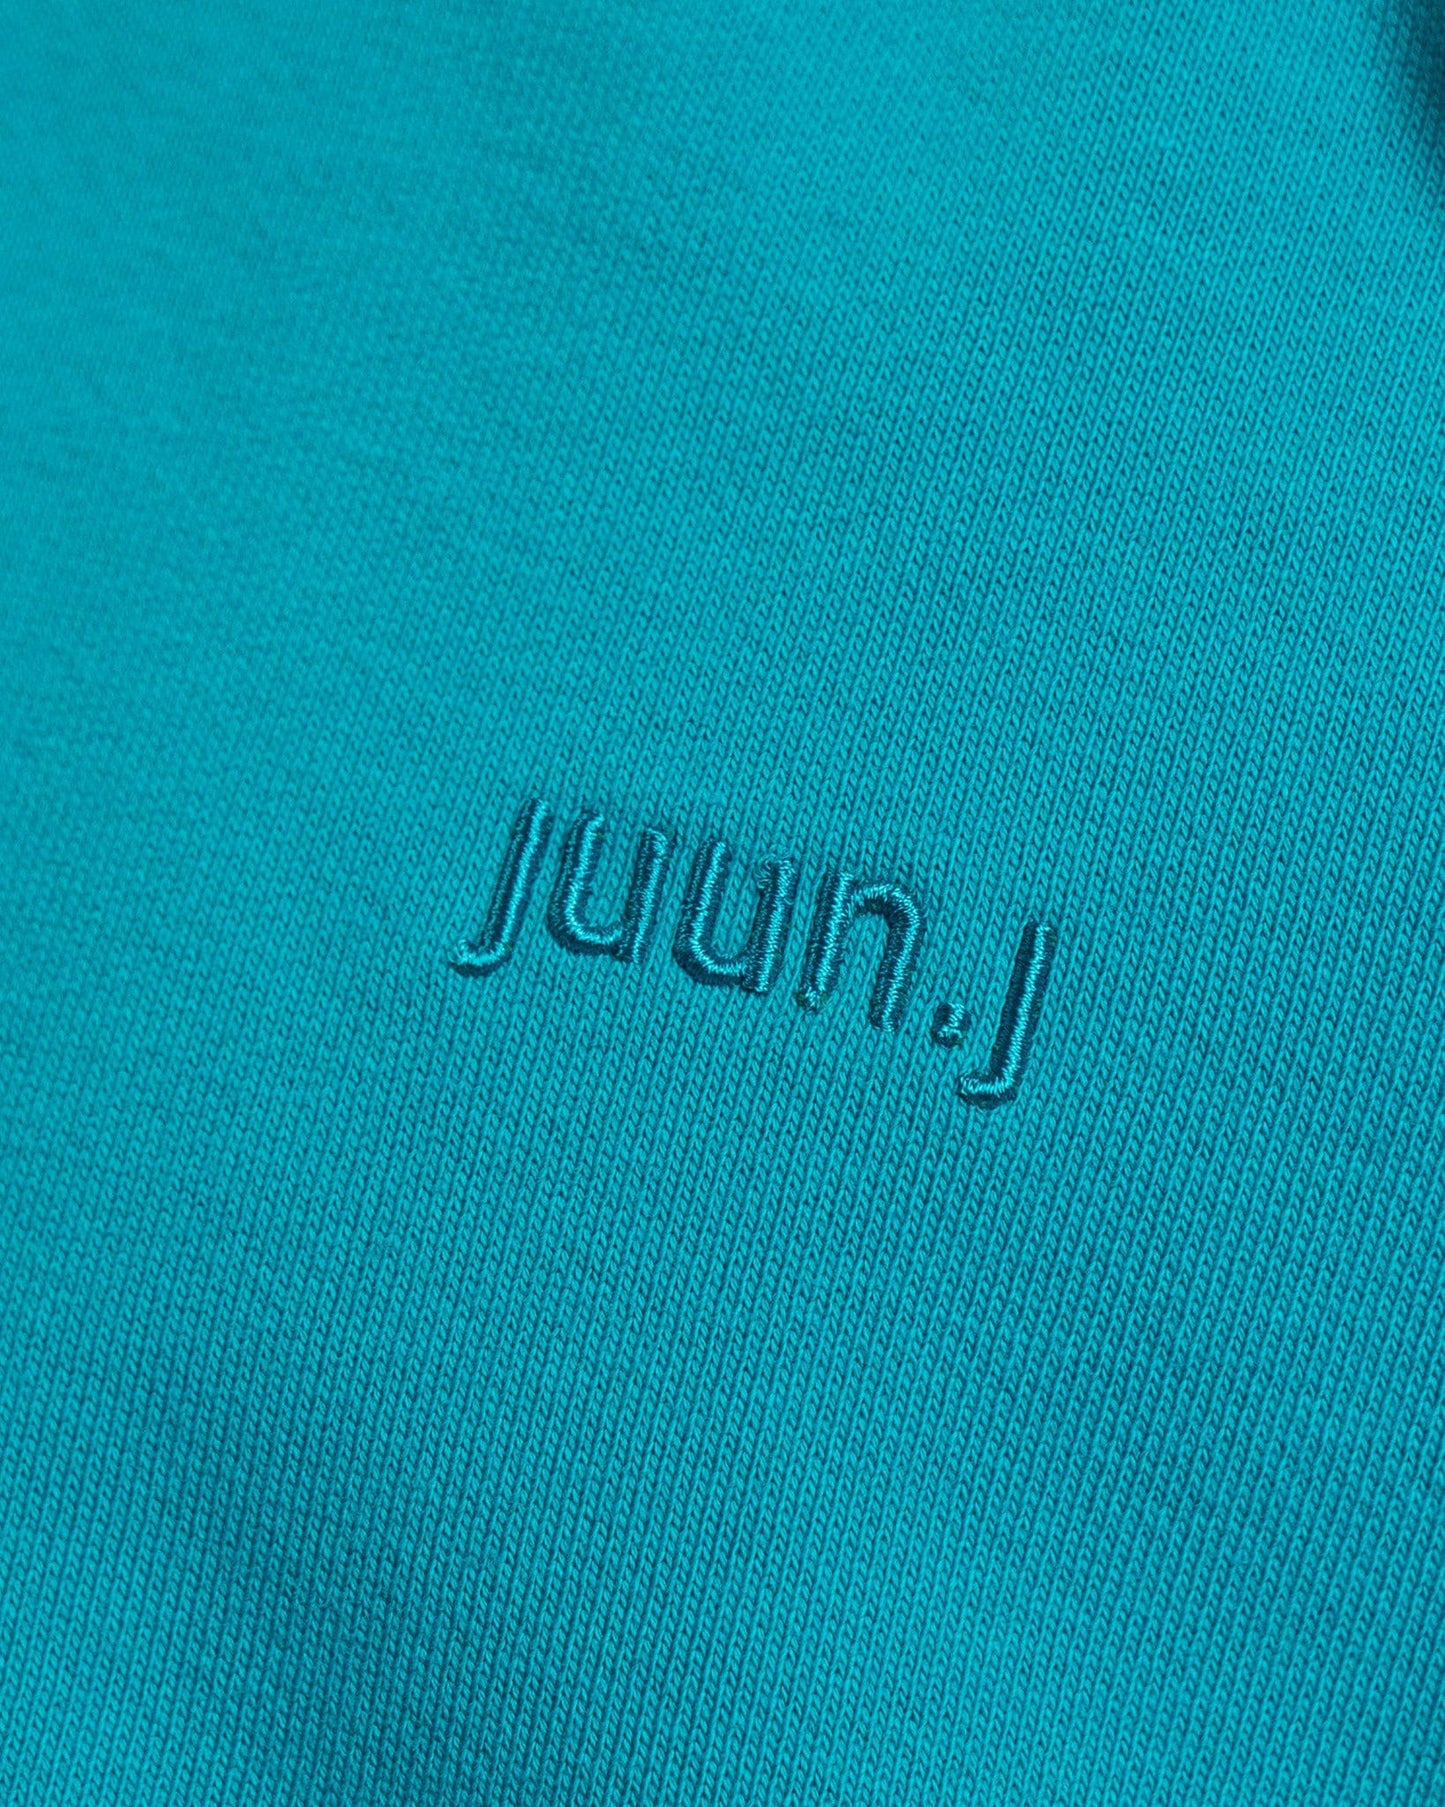 Juun.J Men's Sweatshirts Cap Hoody Sweatshirt in blue